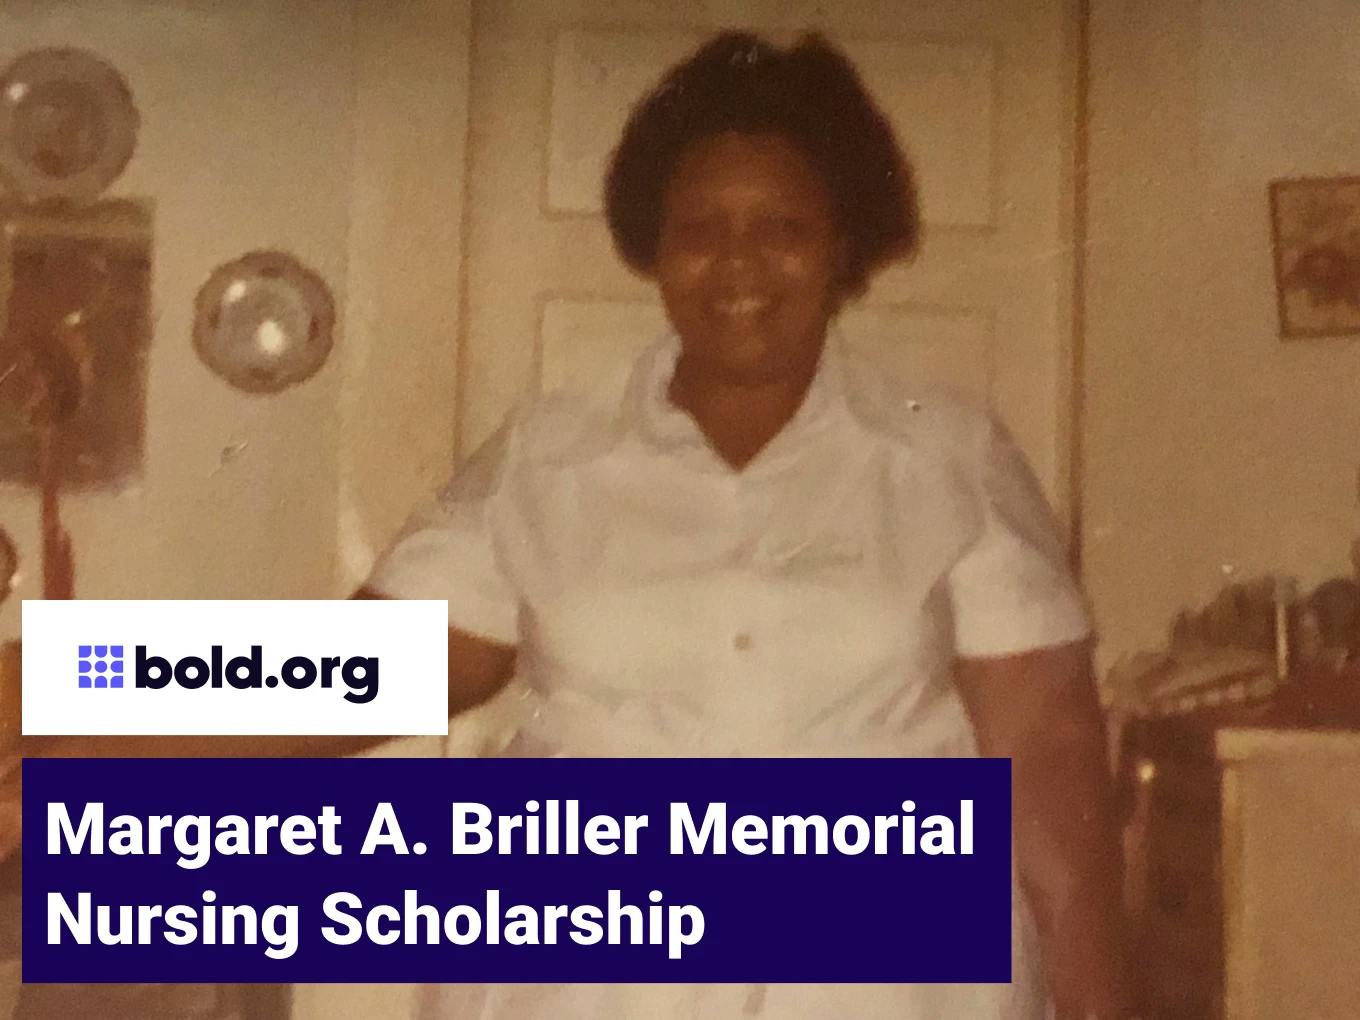 Margaret A. Briller Memorial Nursing Scholarship